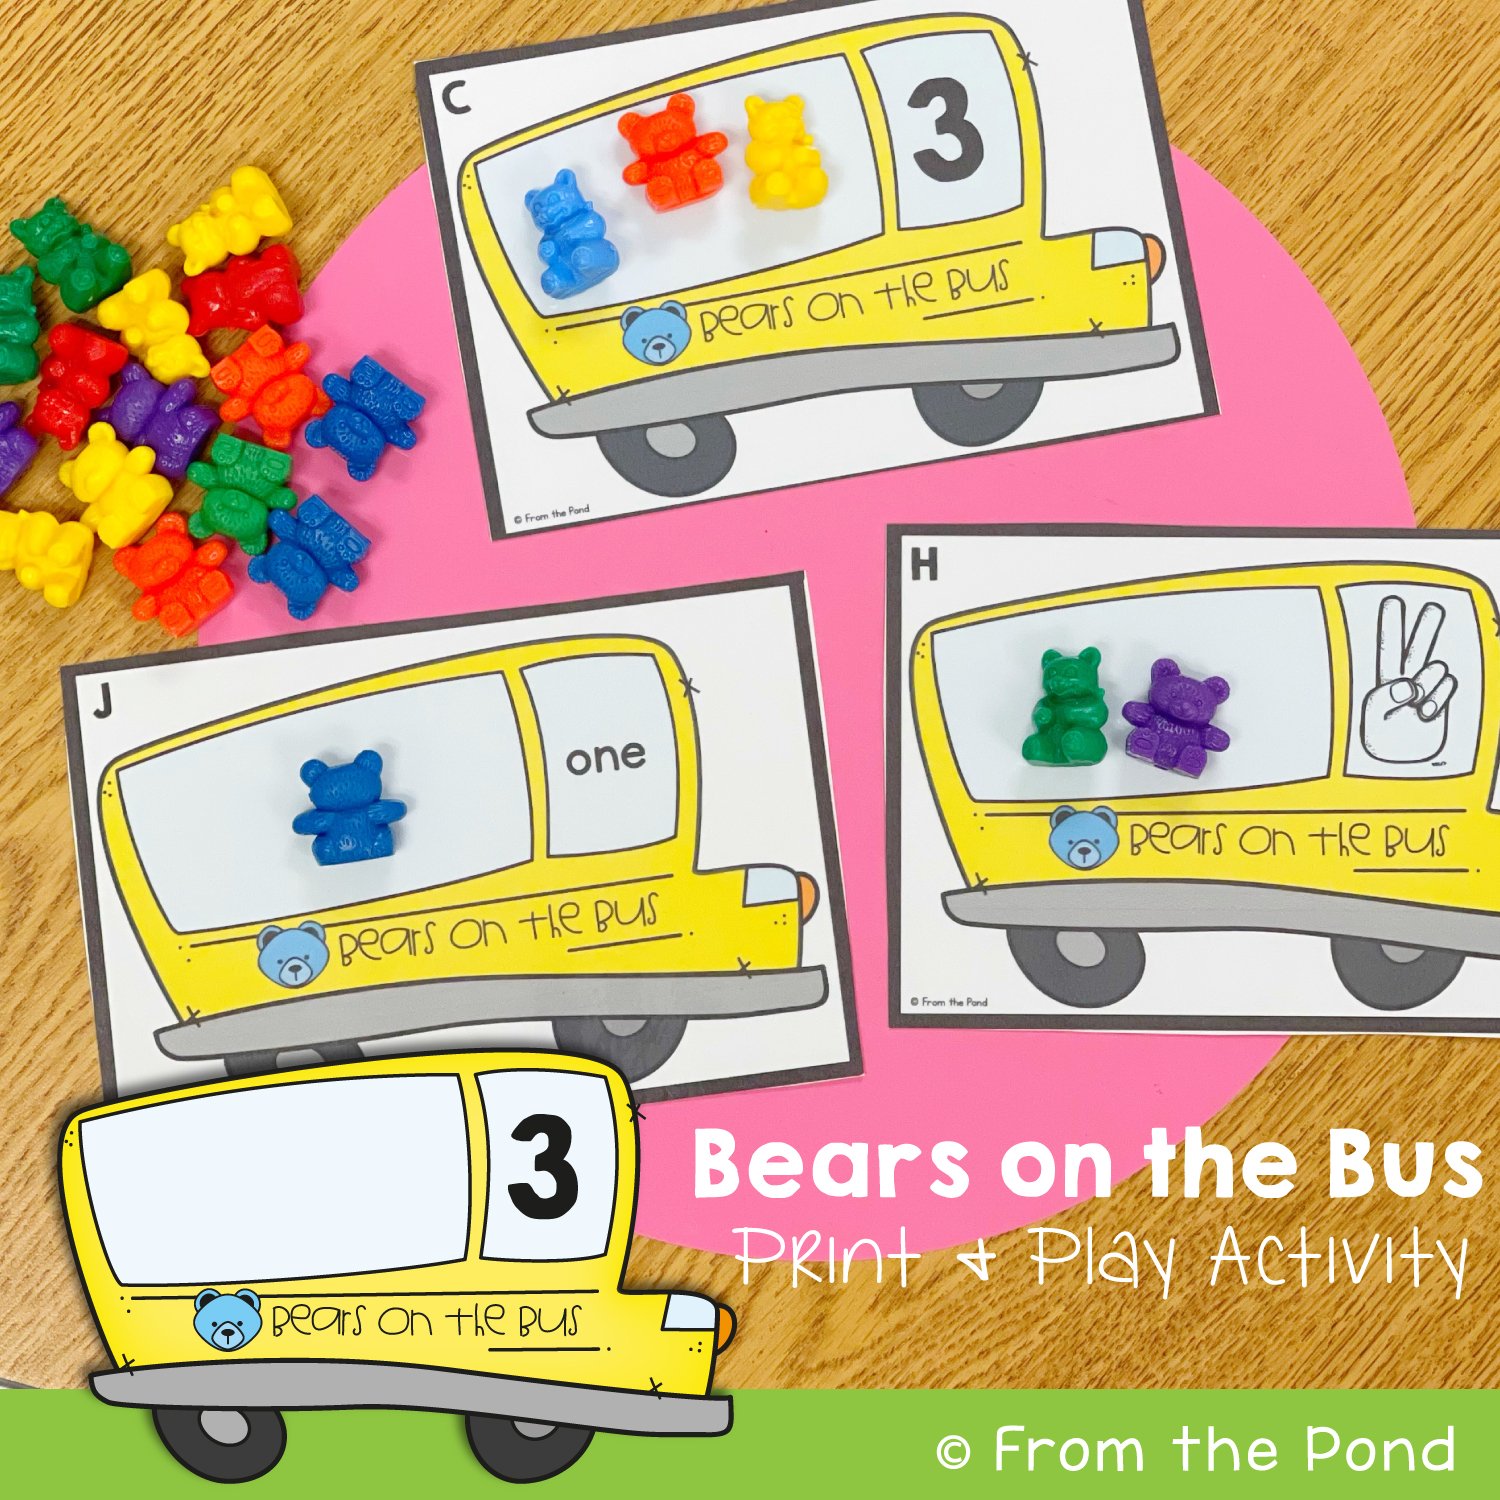 Bears on the Bus